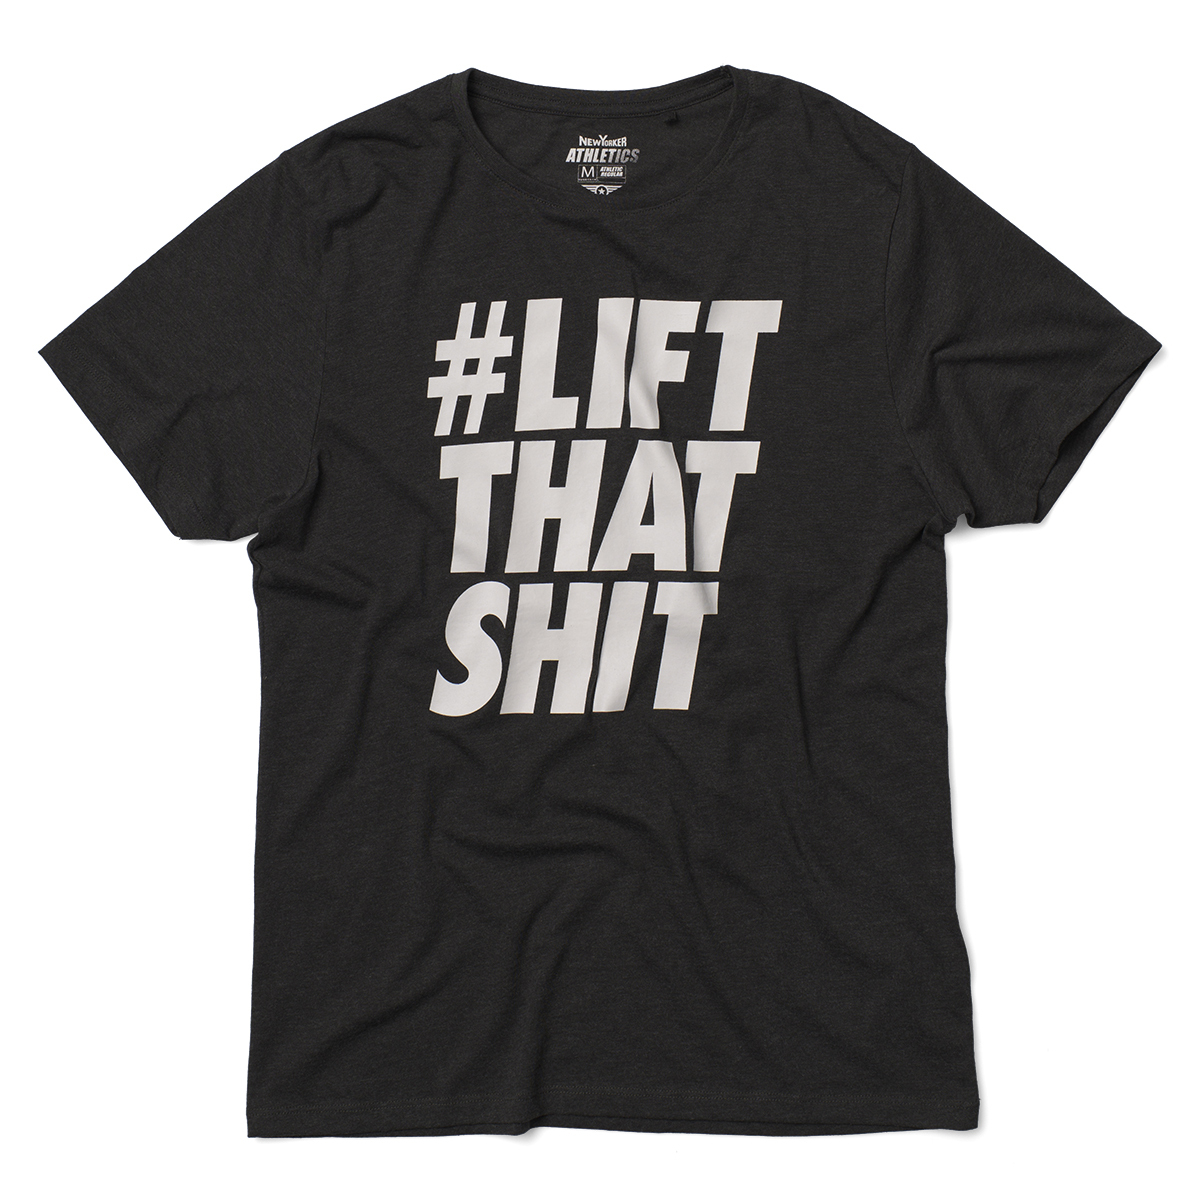 New Yorker Athletics #Lift that shit feliratos T-shirt fotója